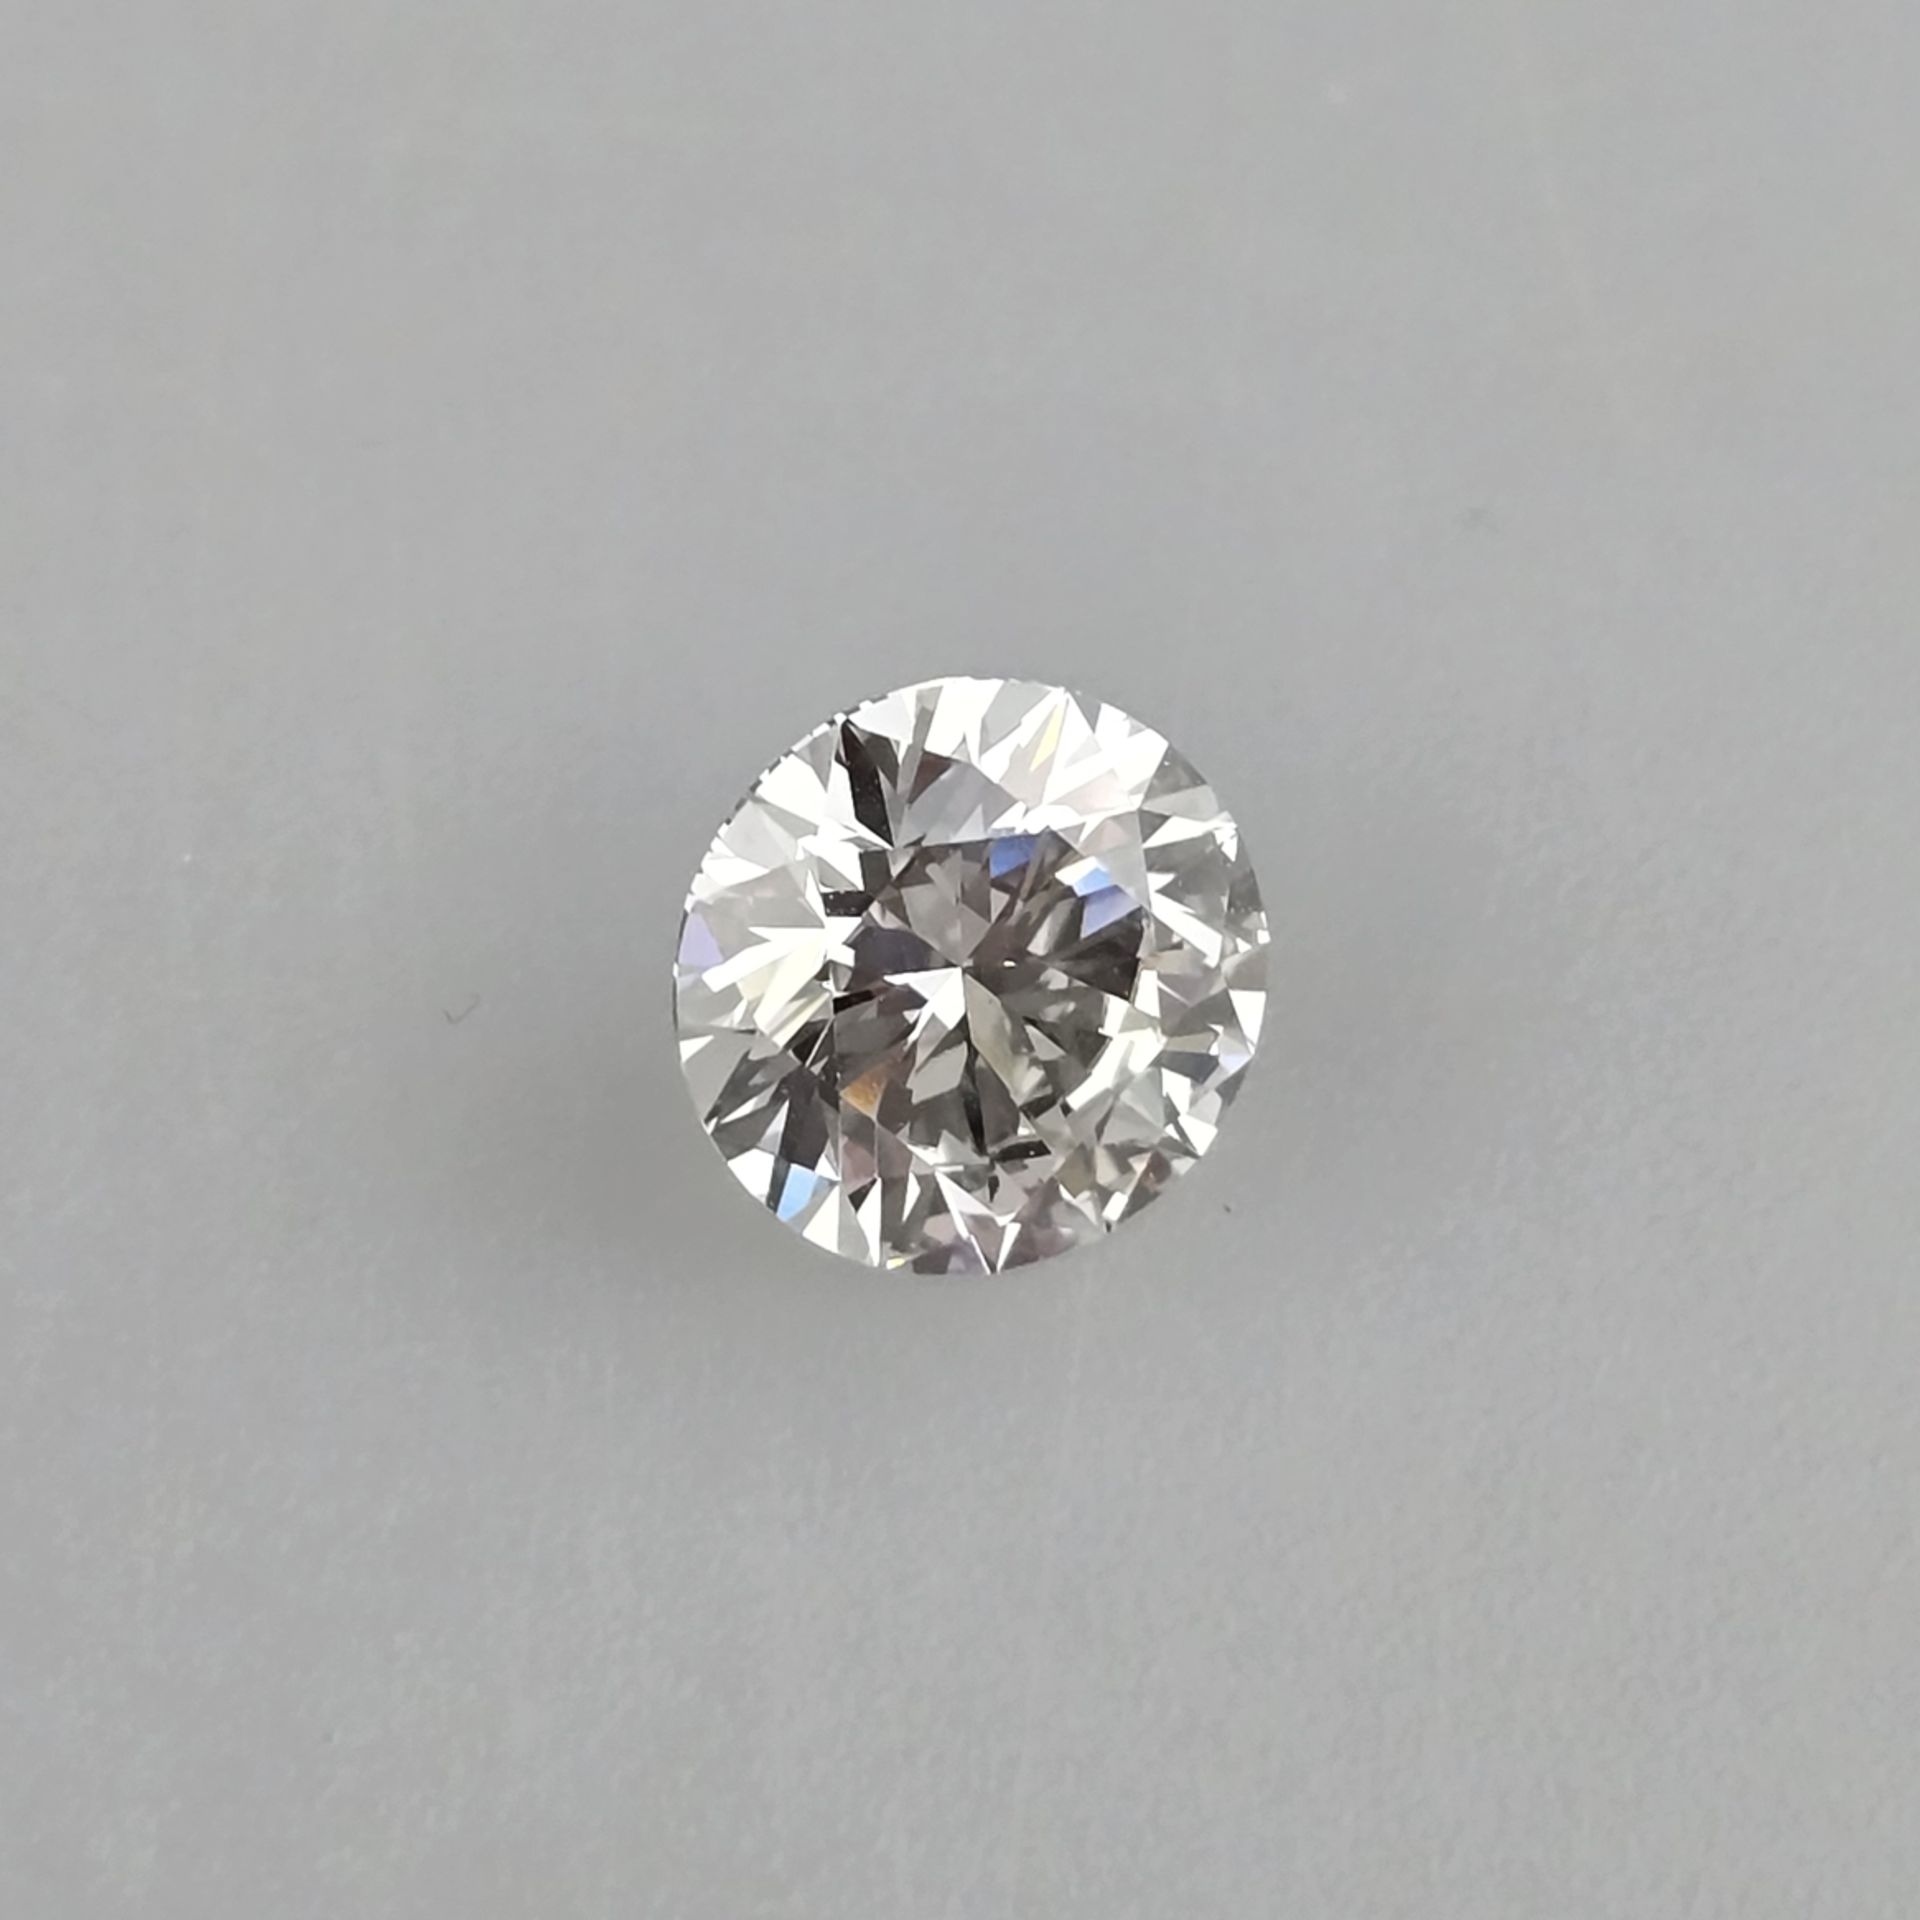 Loser Diamant von 3,03 ct. mit Lasersignatur - Labor-Brillant von idealer Qualität, Gewicht 3,03 ct - Bild 3 aus 8